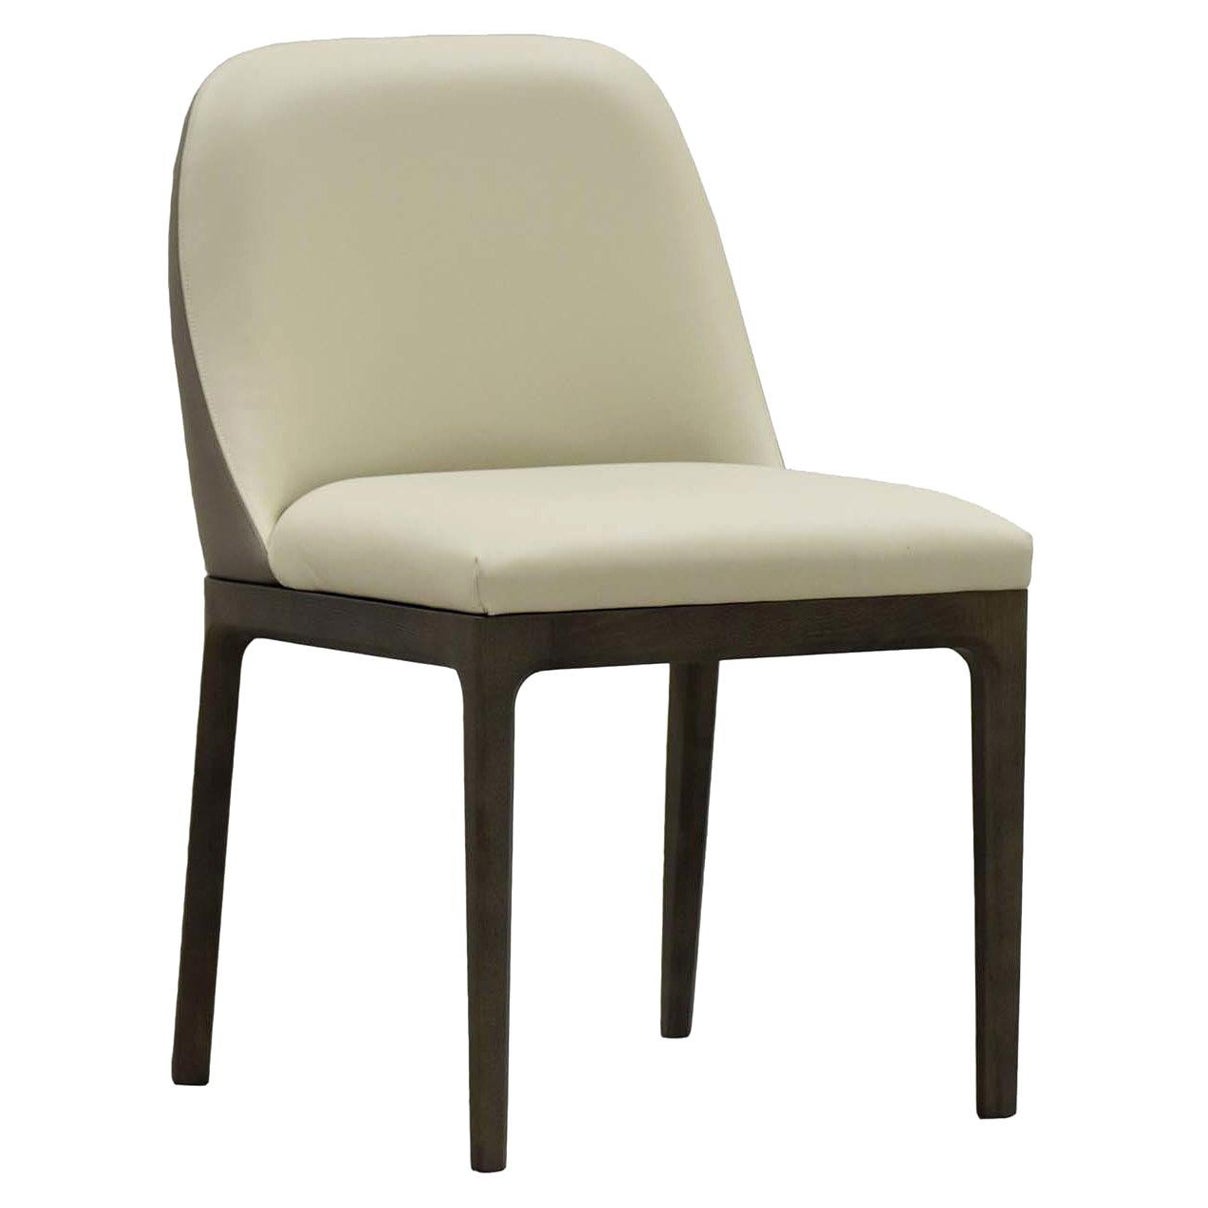 Bellagio Chair by Libero Rutilo For Sale